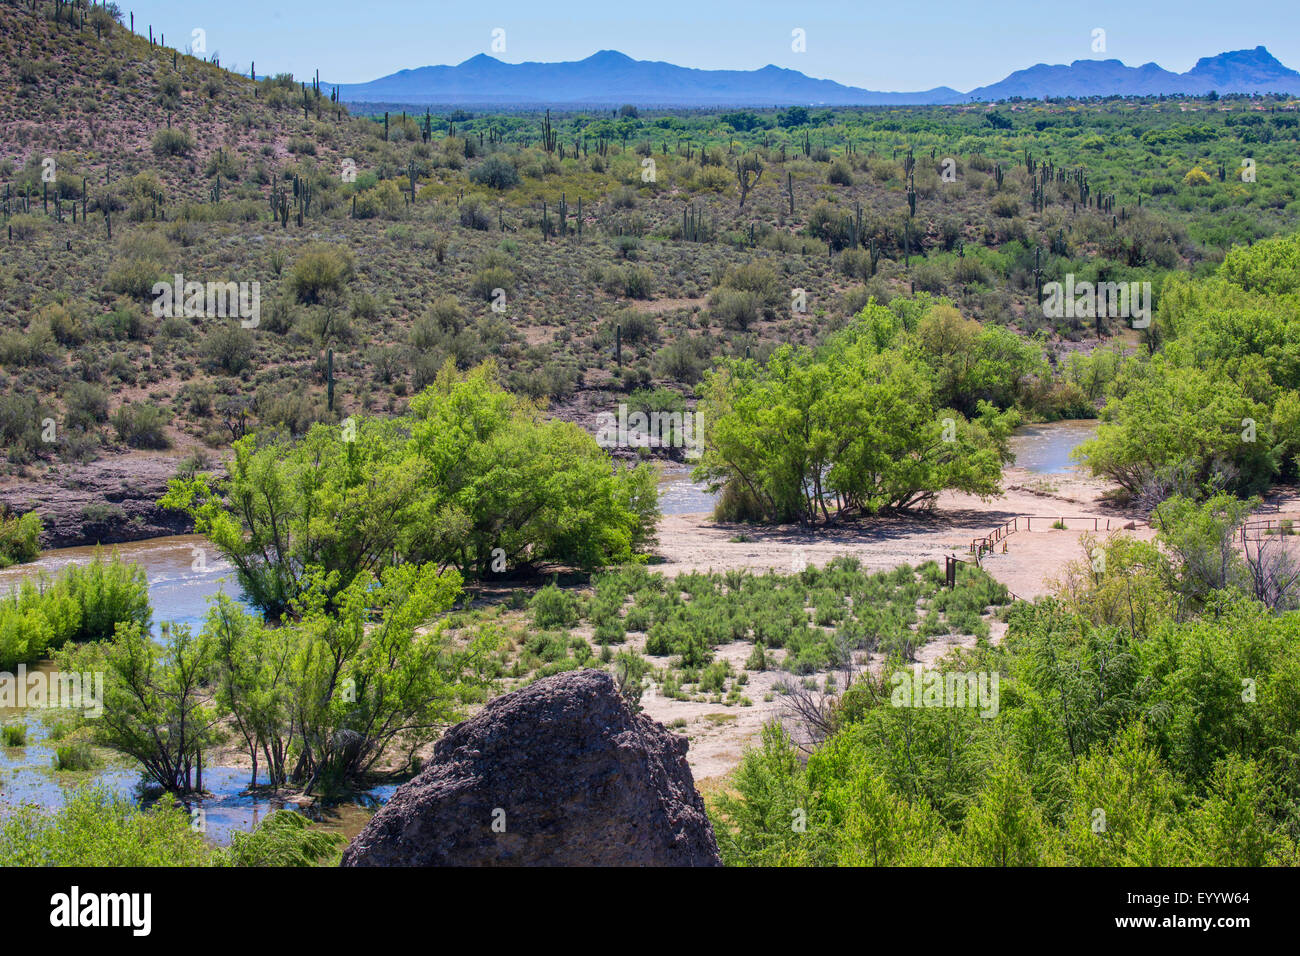 Saguaro en el borde de una llanura de inundación del río, banda verde a través del desierto de Sonora, ESTADOS UNIDOS, Arizona, Río Verde Foto de stock